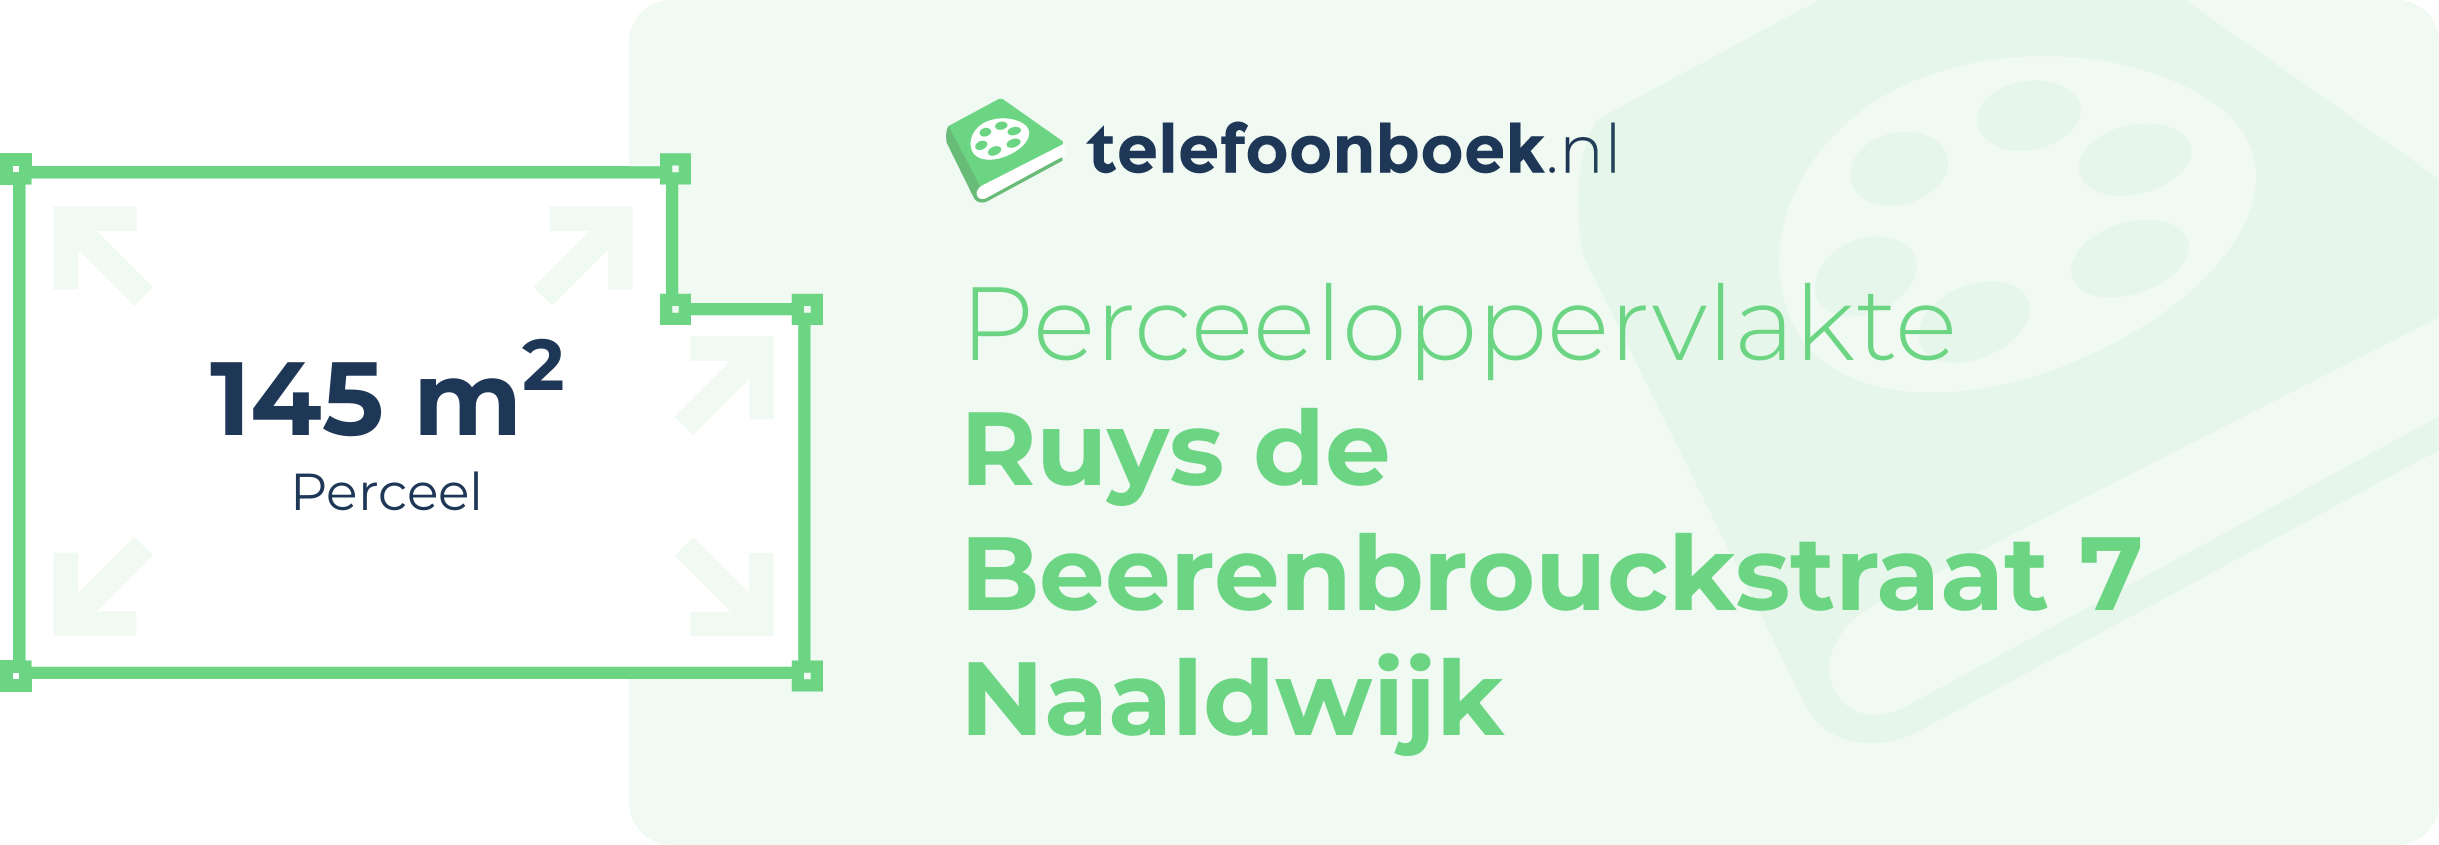 Perceeloppervlakte Ruys De Beerenbrouckstraat 7 Naaldwijk